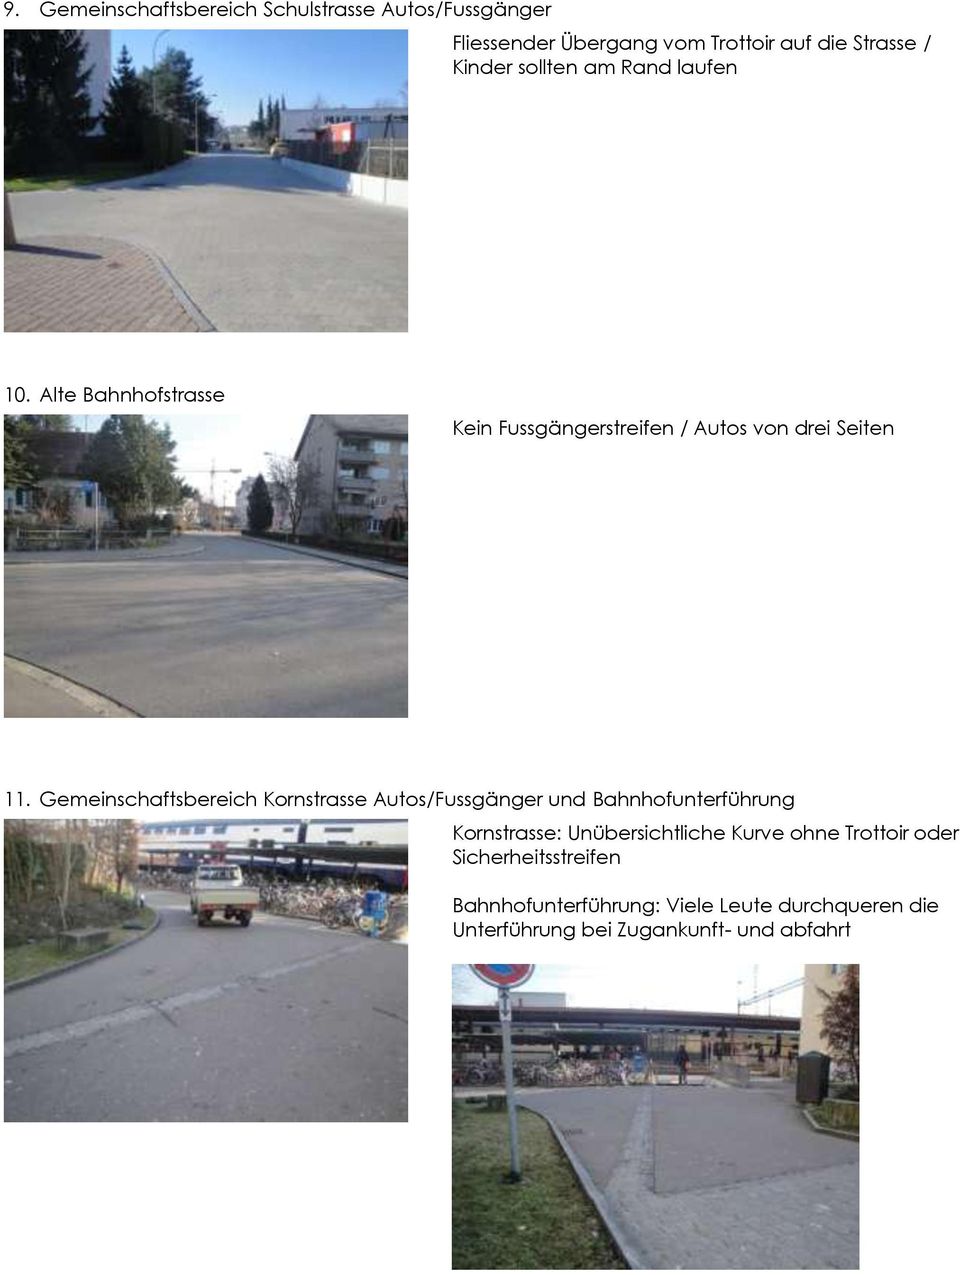 Gemeinschaftsbereich Kornstrasse Autos/Fussgänger und Bahnhofunterführung Kornstrasse: Unübersichtliche Kurve